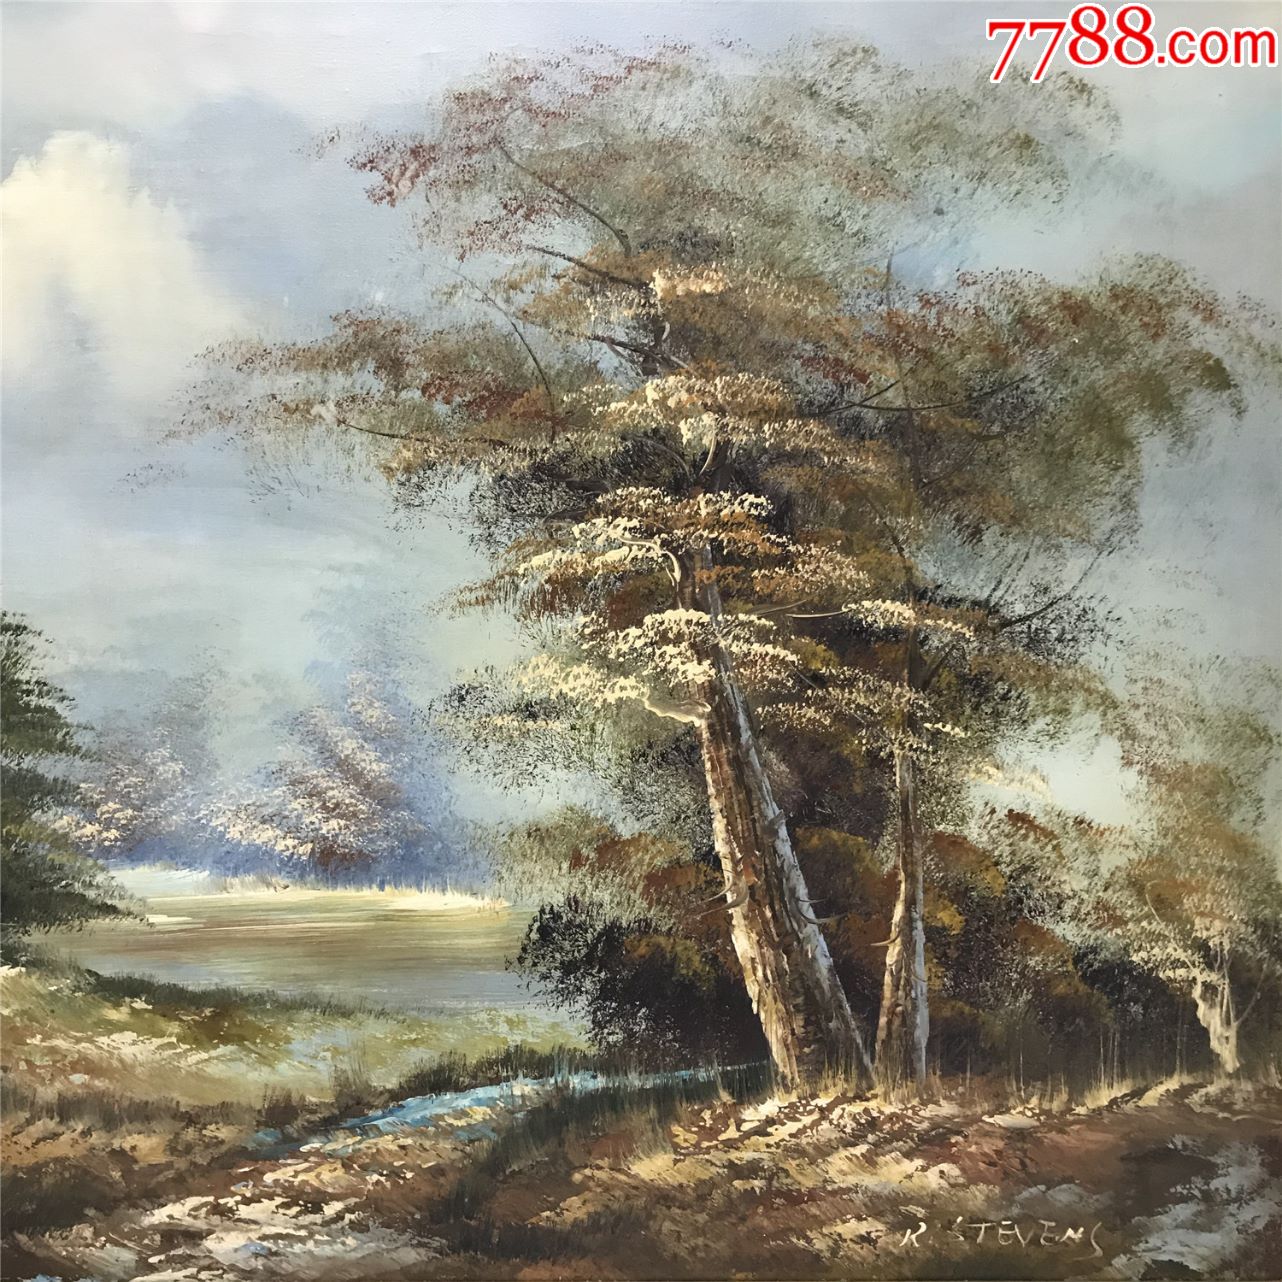 约翰劳式西洋古董油画20世纪中期英国画家r.stevens原稿手绘风景画